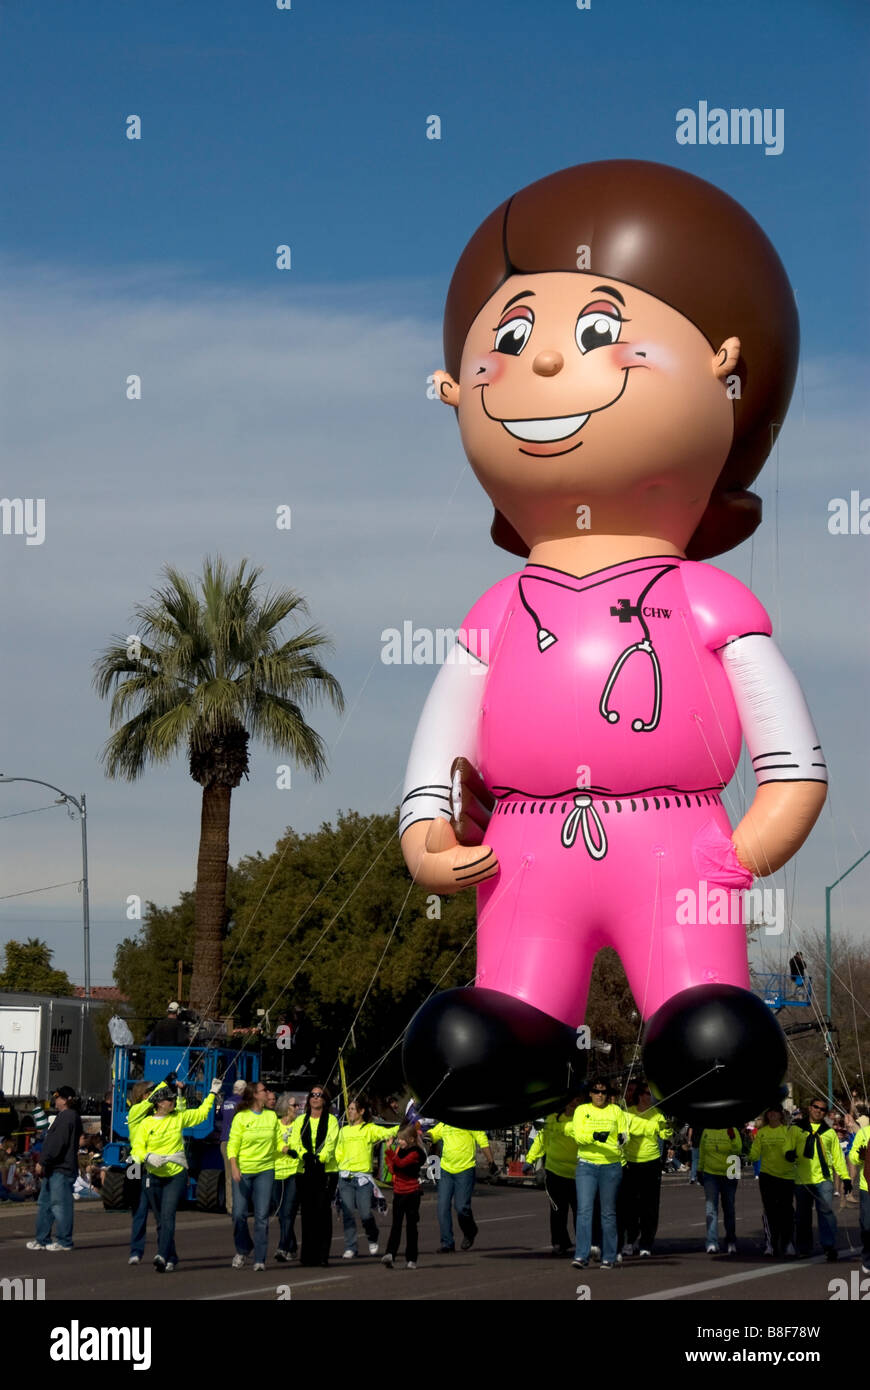 Nancy die Krankenschwester Ballon im Fiesta Bowl Parade Phoenix Arizona, USA. St. Joseph's Hospital bringt die gigantische Krankenschwester zur Parade jedes Jahr. Stockfoto